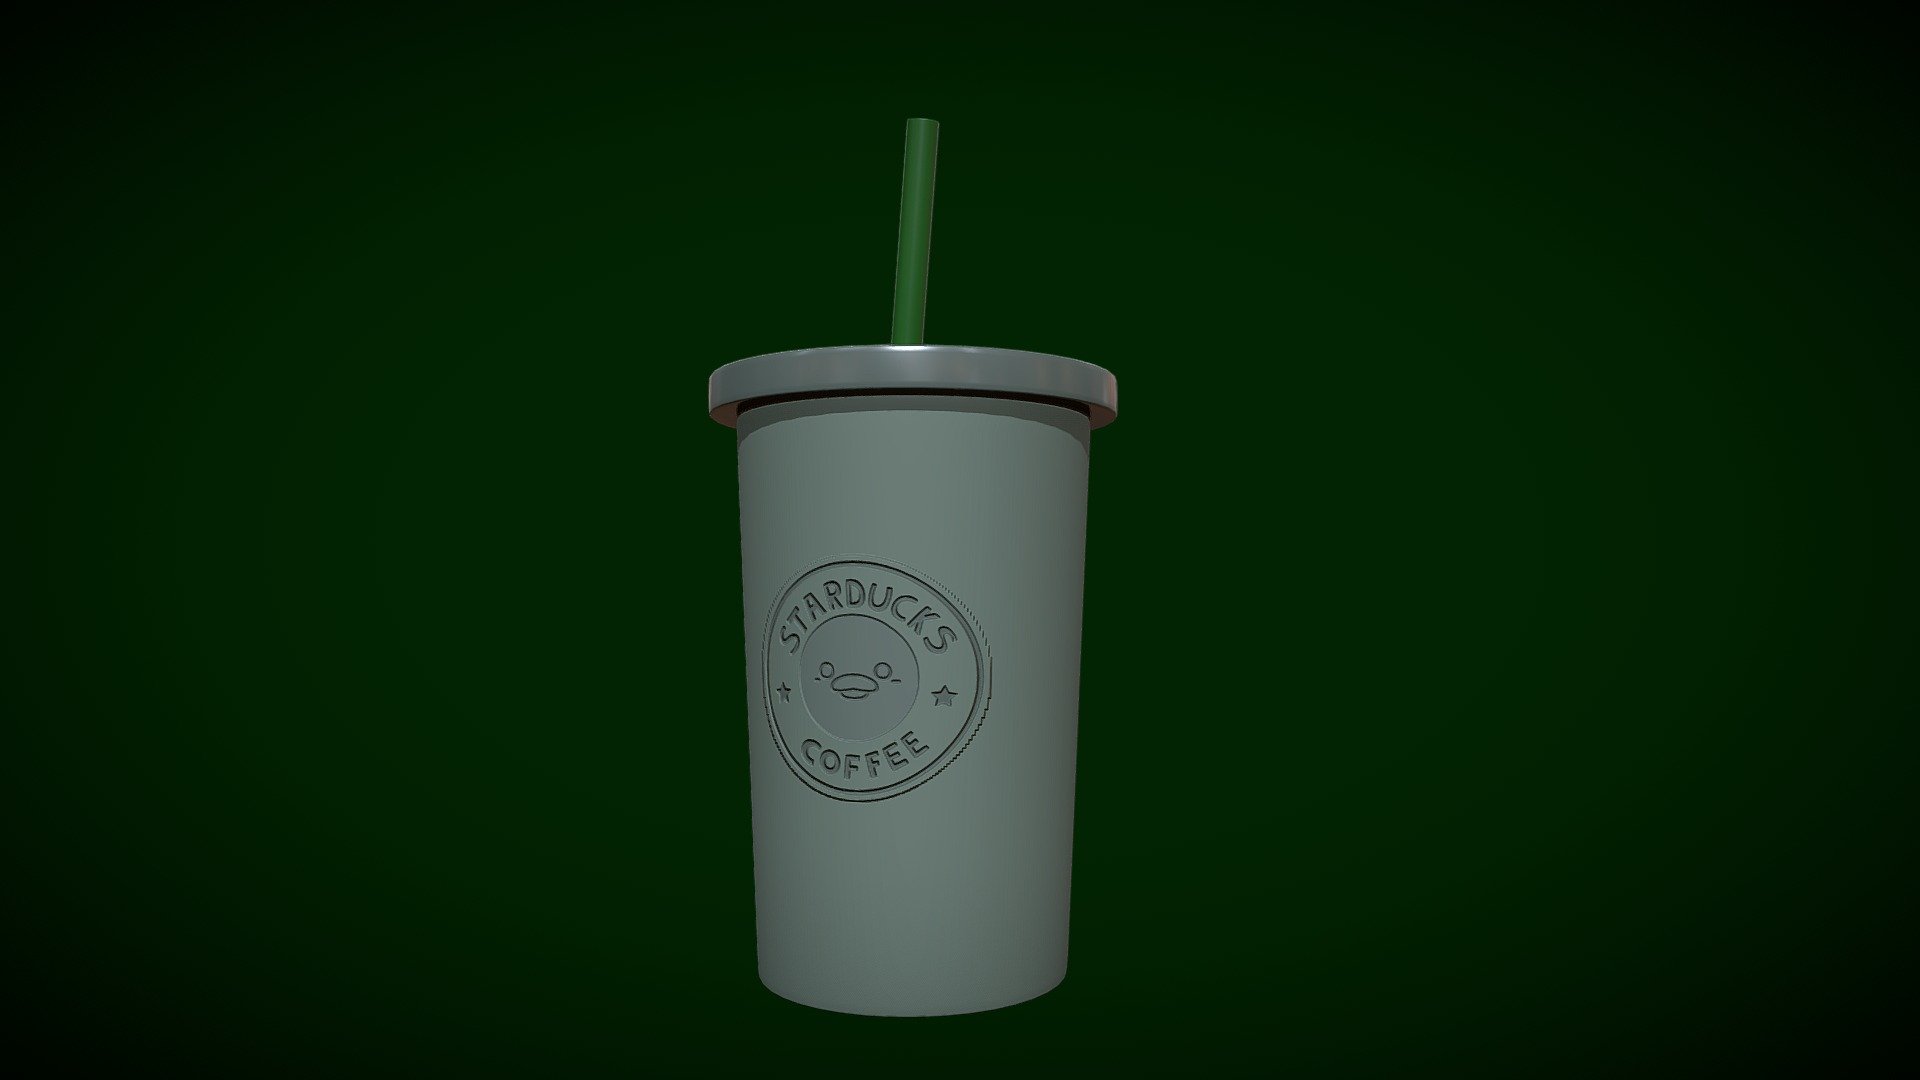 Guek :v
Fanart of Starbucks :D - Starbucks Starducks - Download Free 3D model by Greg (@LilSkele) 3d model